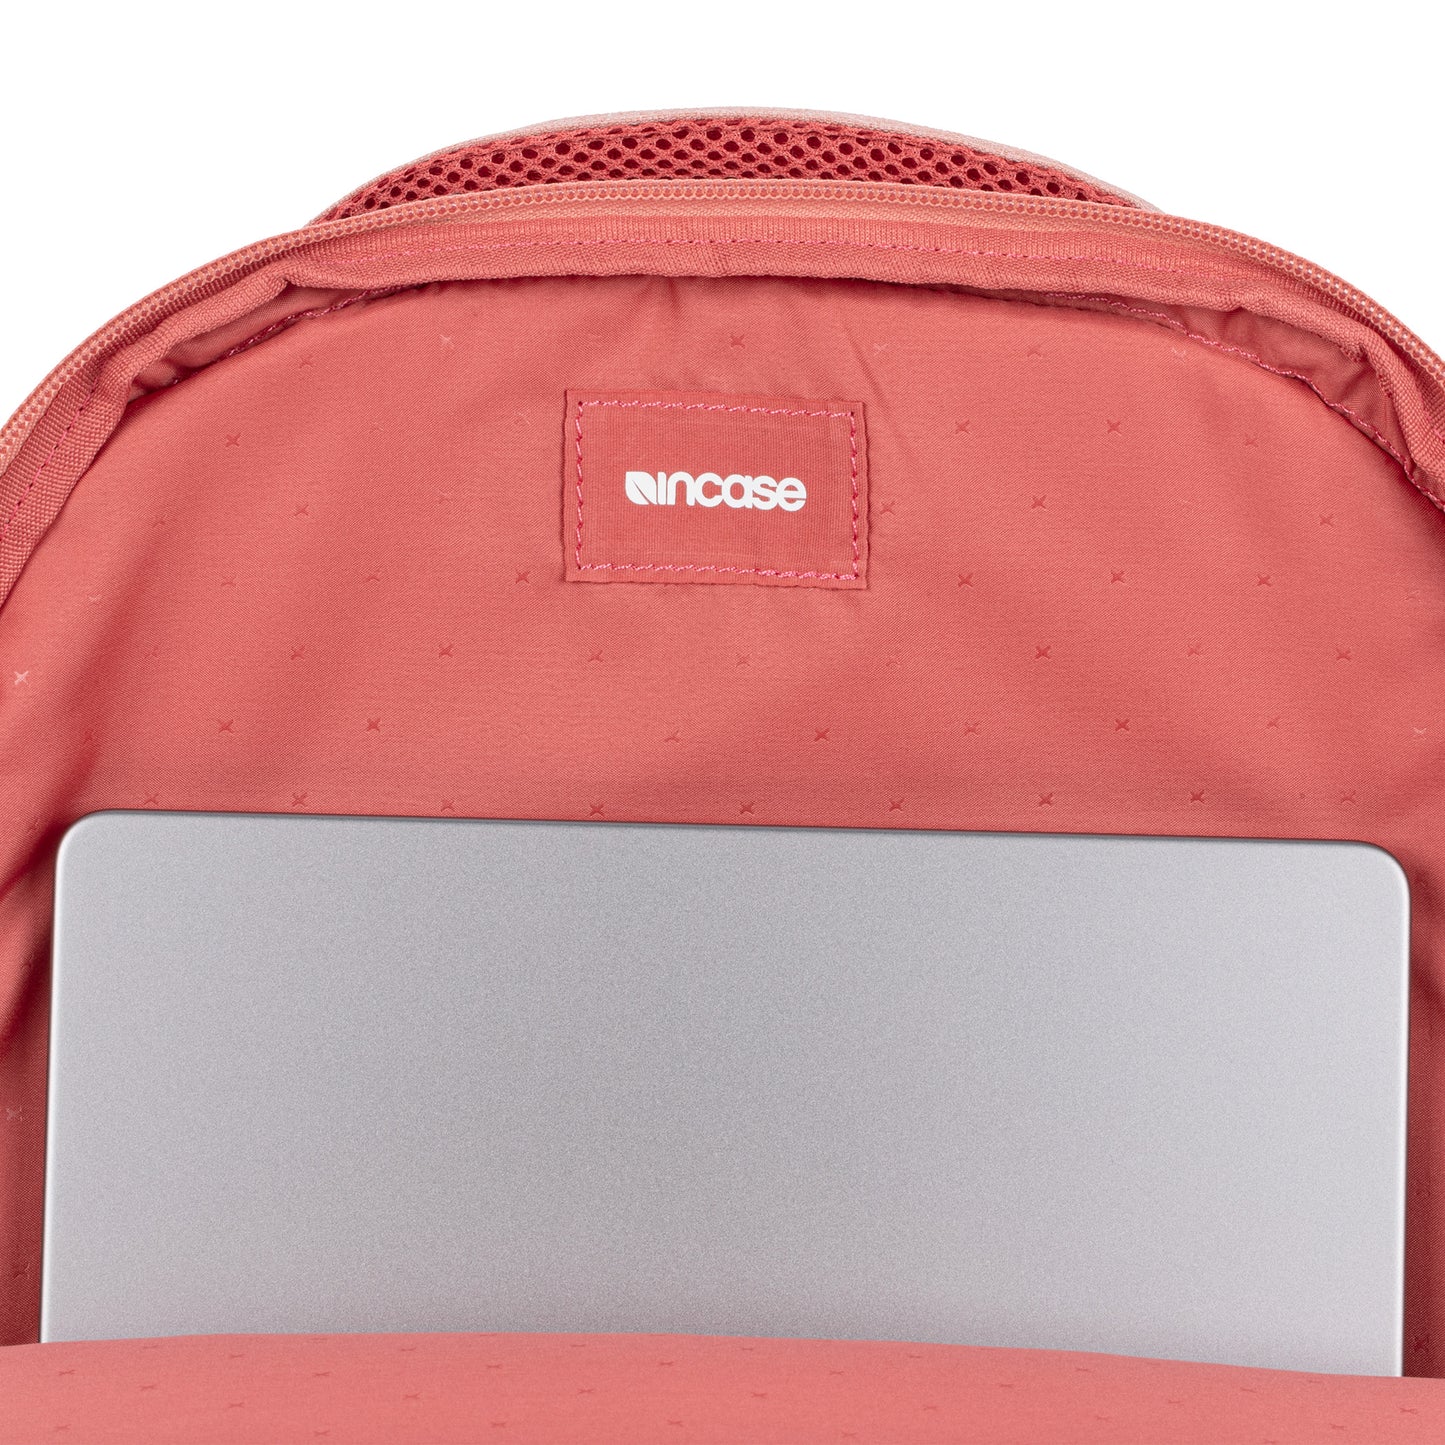 Facet 20L Backpack -Pink‐